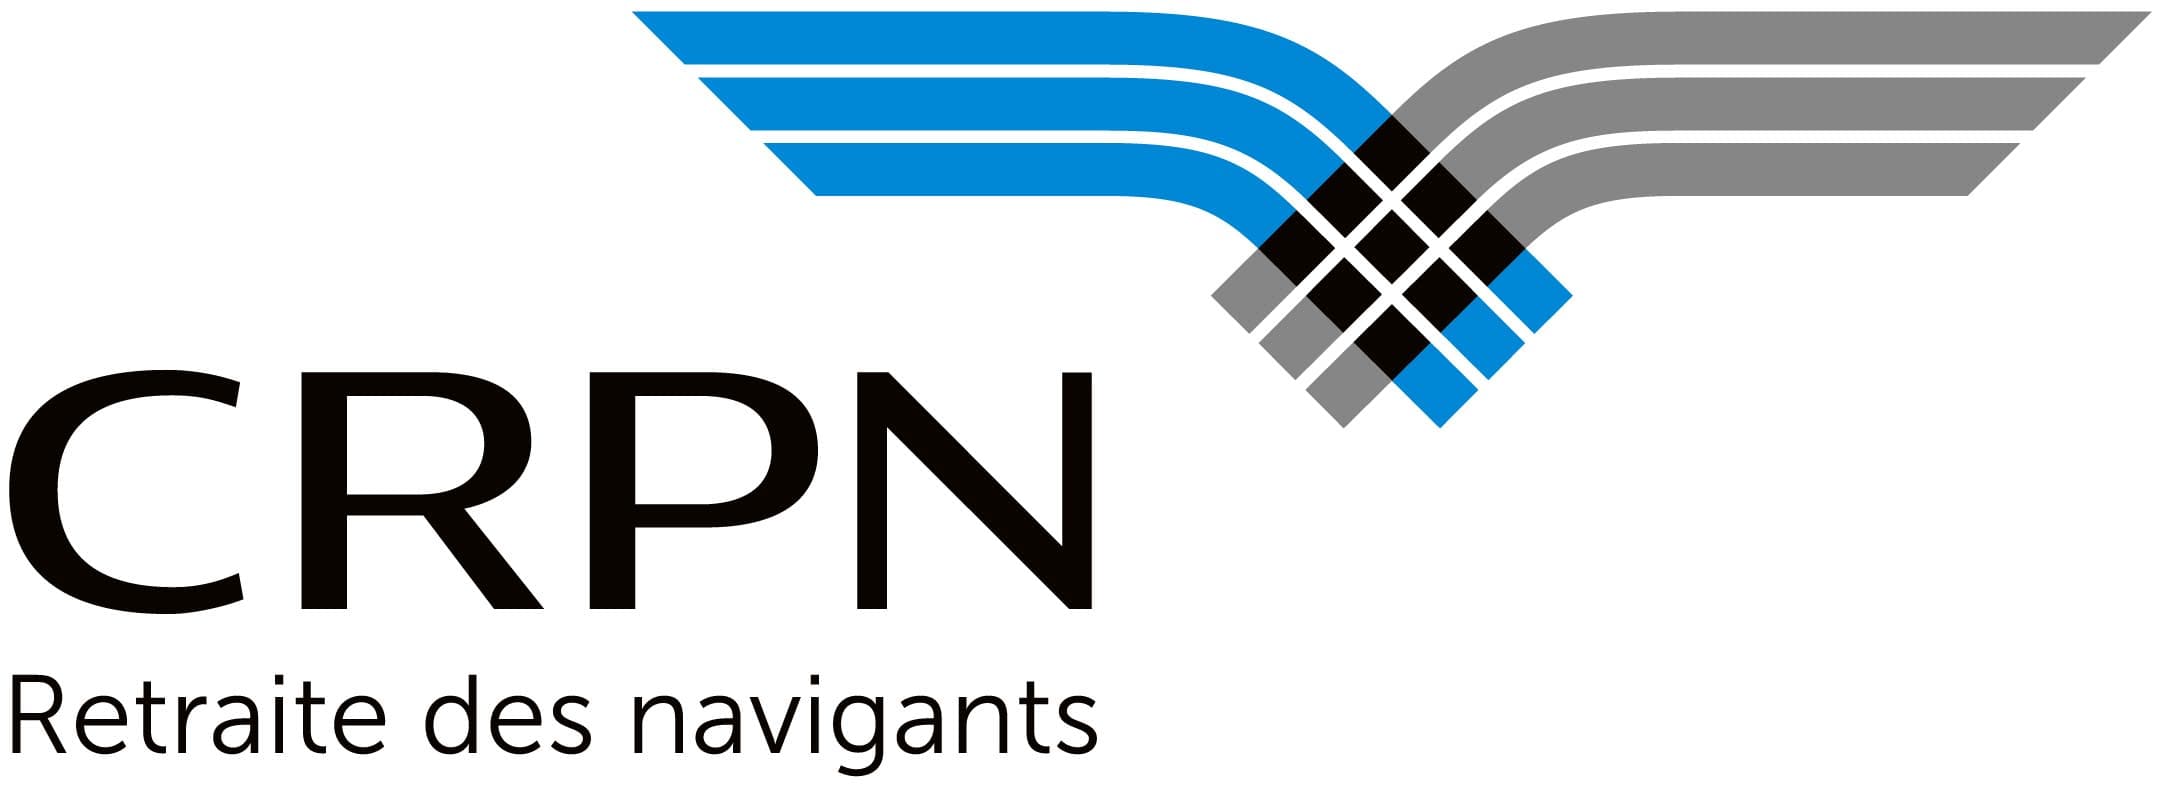 CRPN - Logo